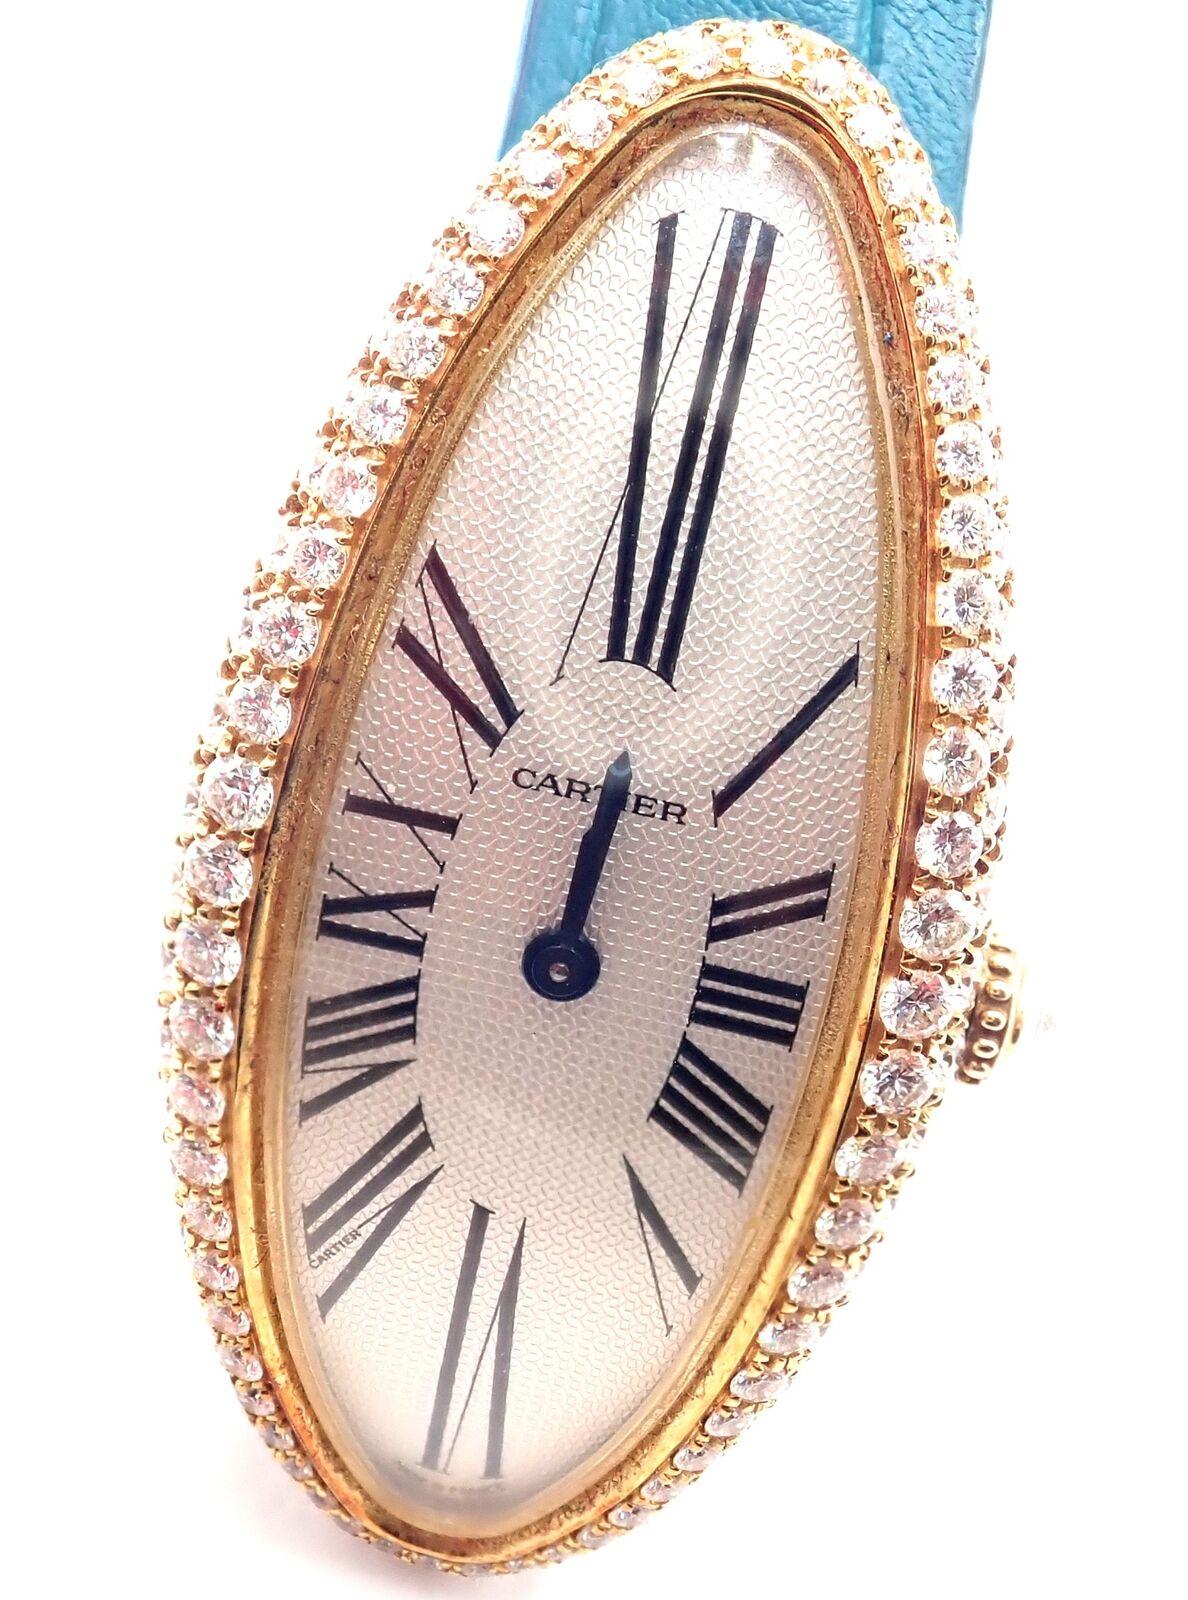 Montre-bracelet Baignoire Allongée en or rose 18 carats avec diamants par Cartier Référence 2672.
Cette montre est livrée avec  Boîte Cartier.
Numéro de référence 2672.
Bracelet en crocodile de Cartier.
Prix de détail : 41 200 $ plus taxes.
Montre